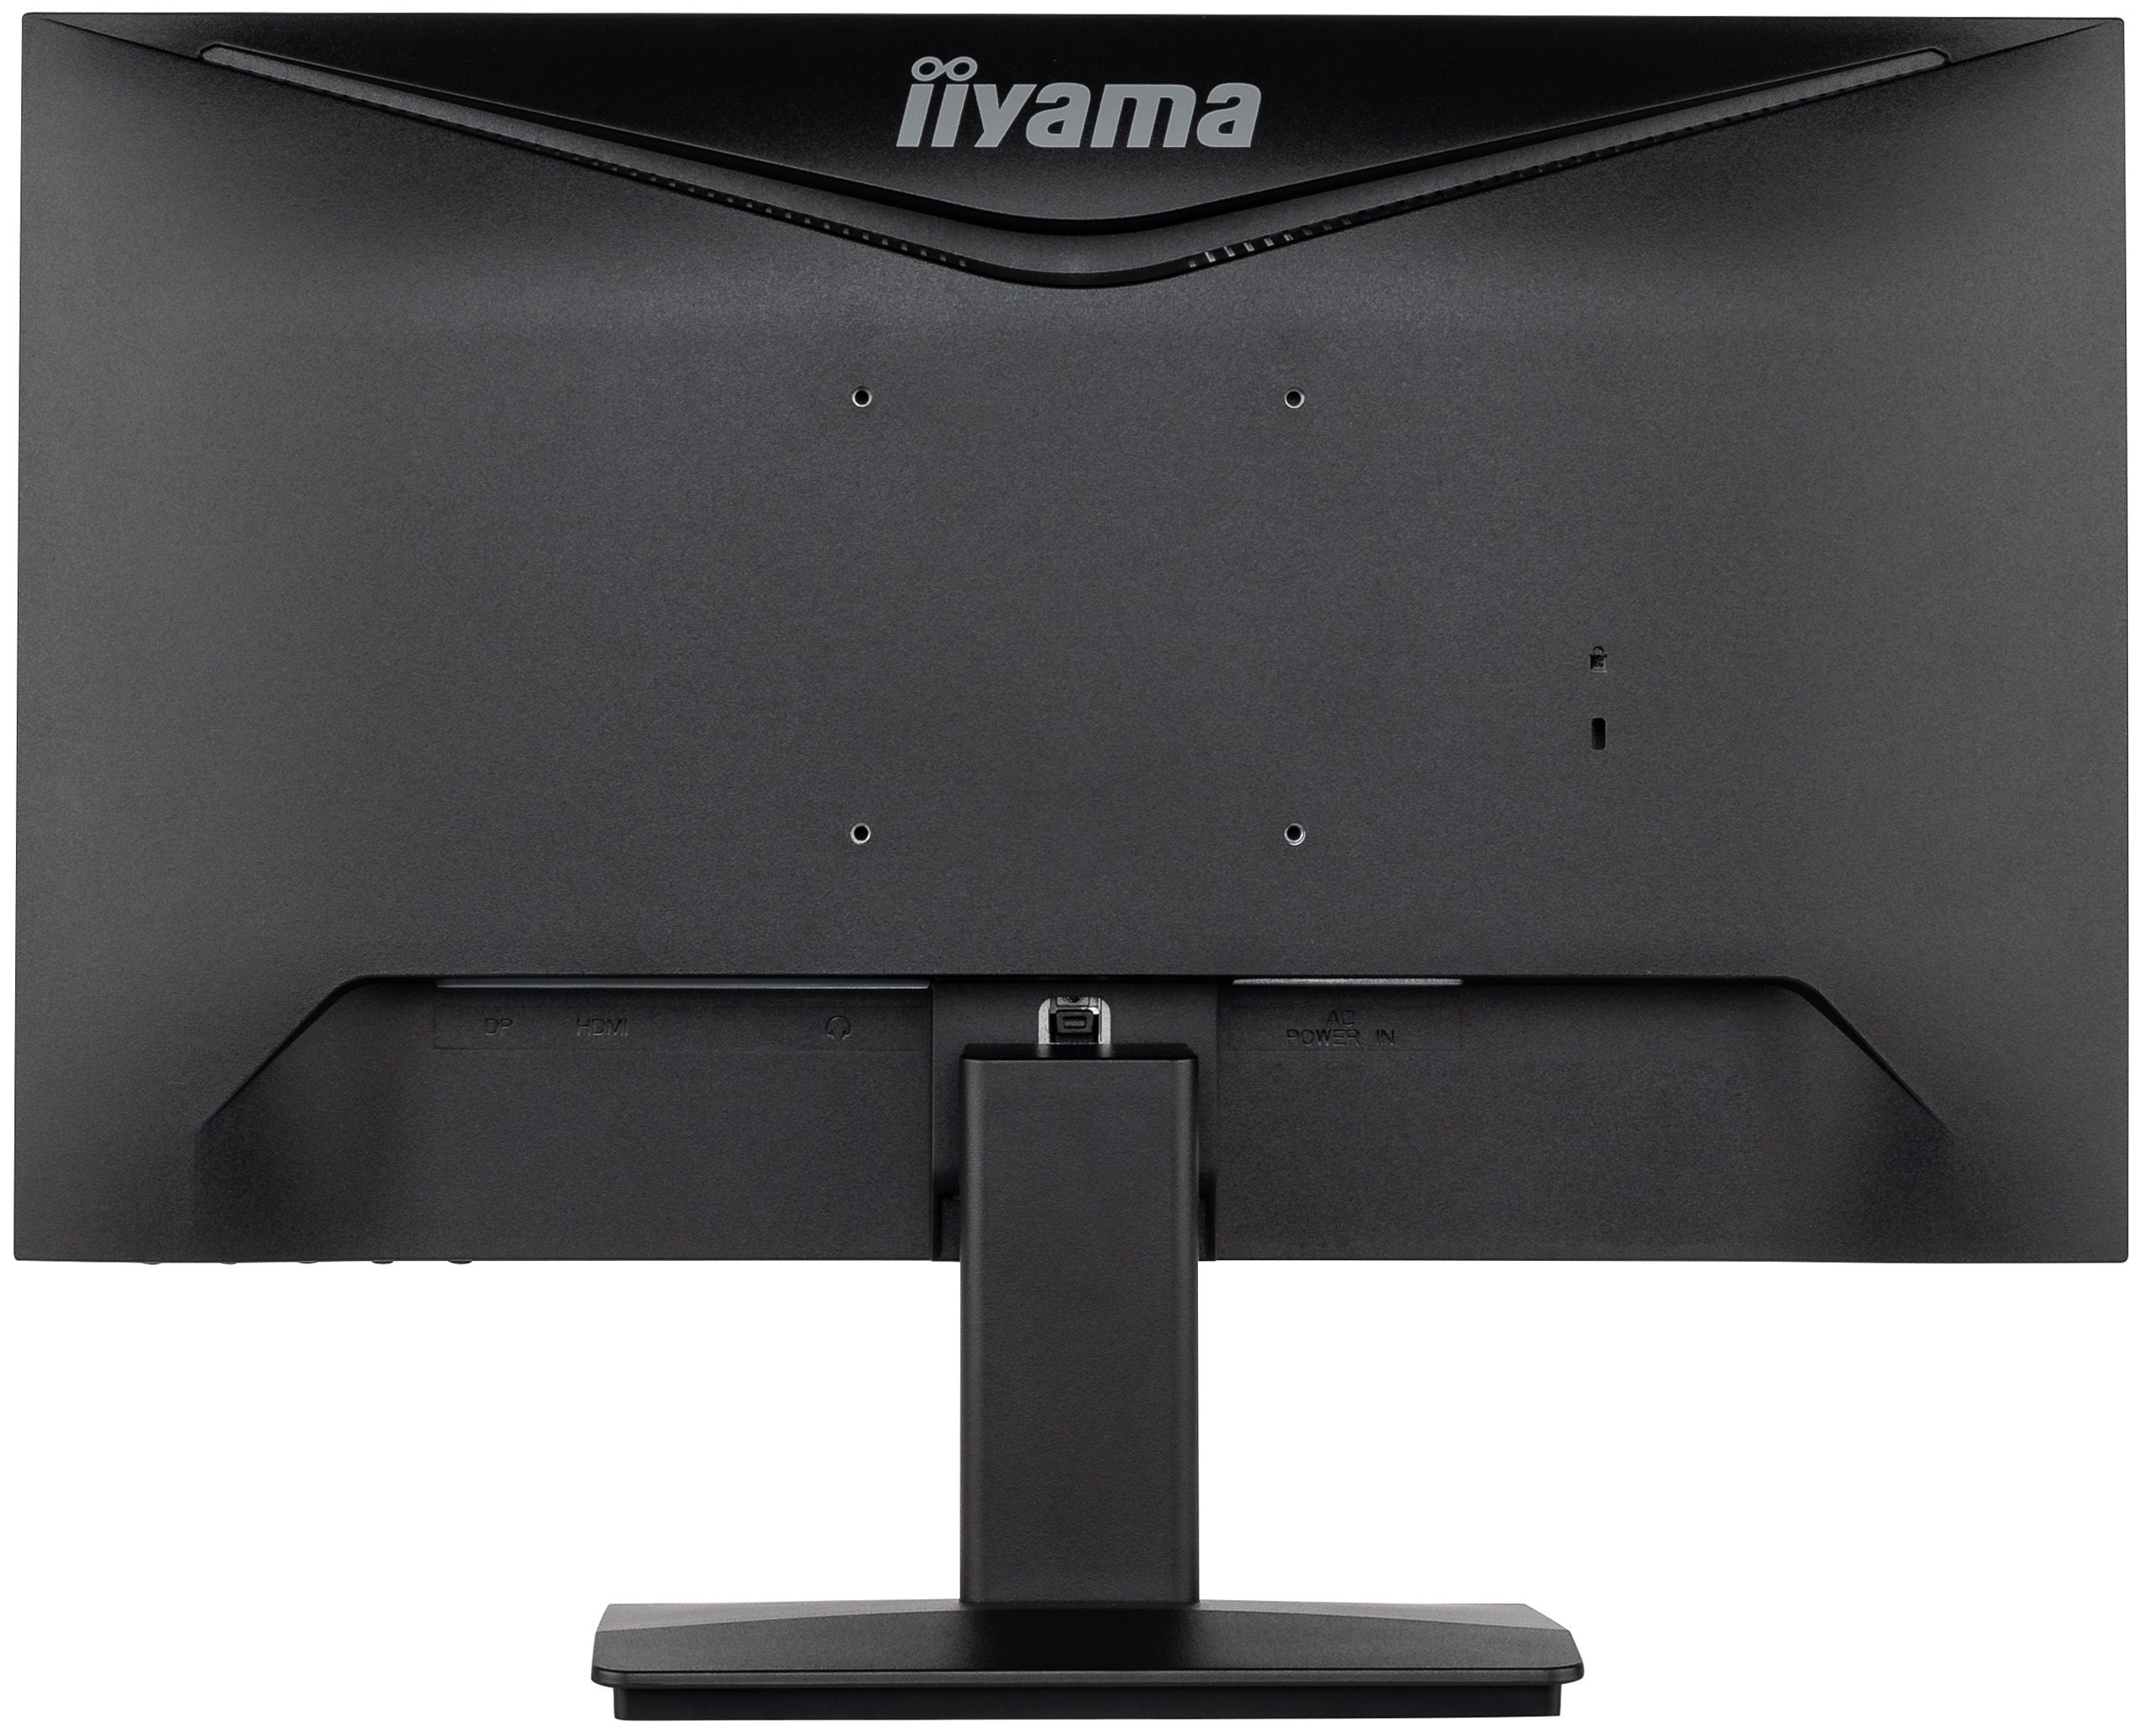 IIYAMA Monitor LED XU2293HS-B5 21.5